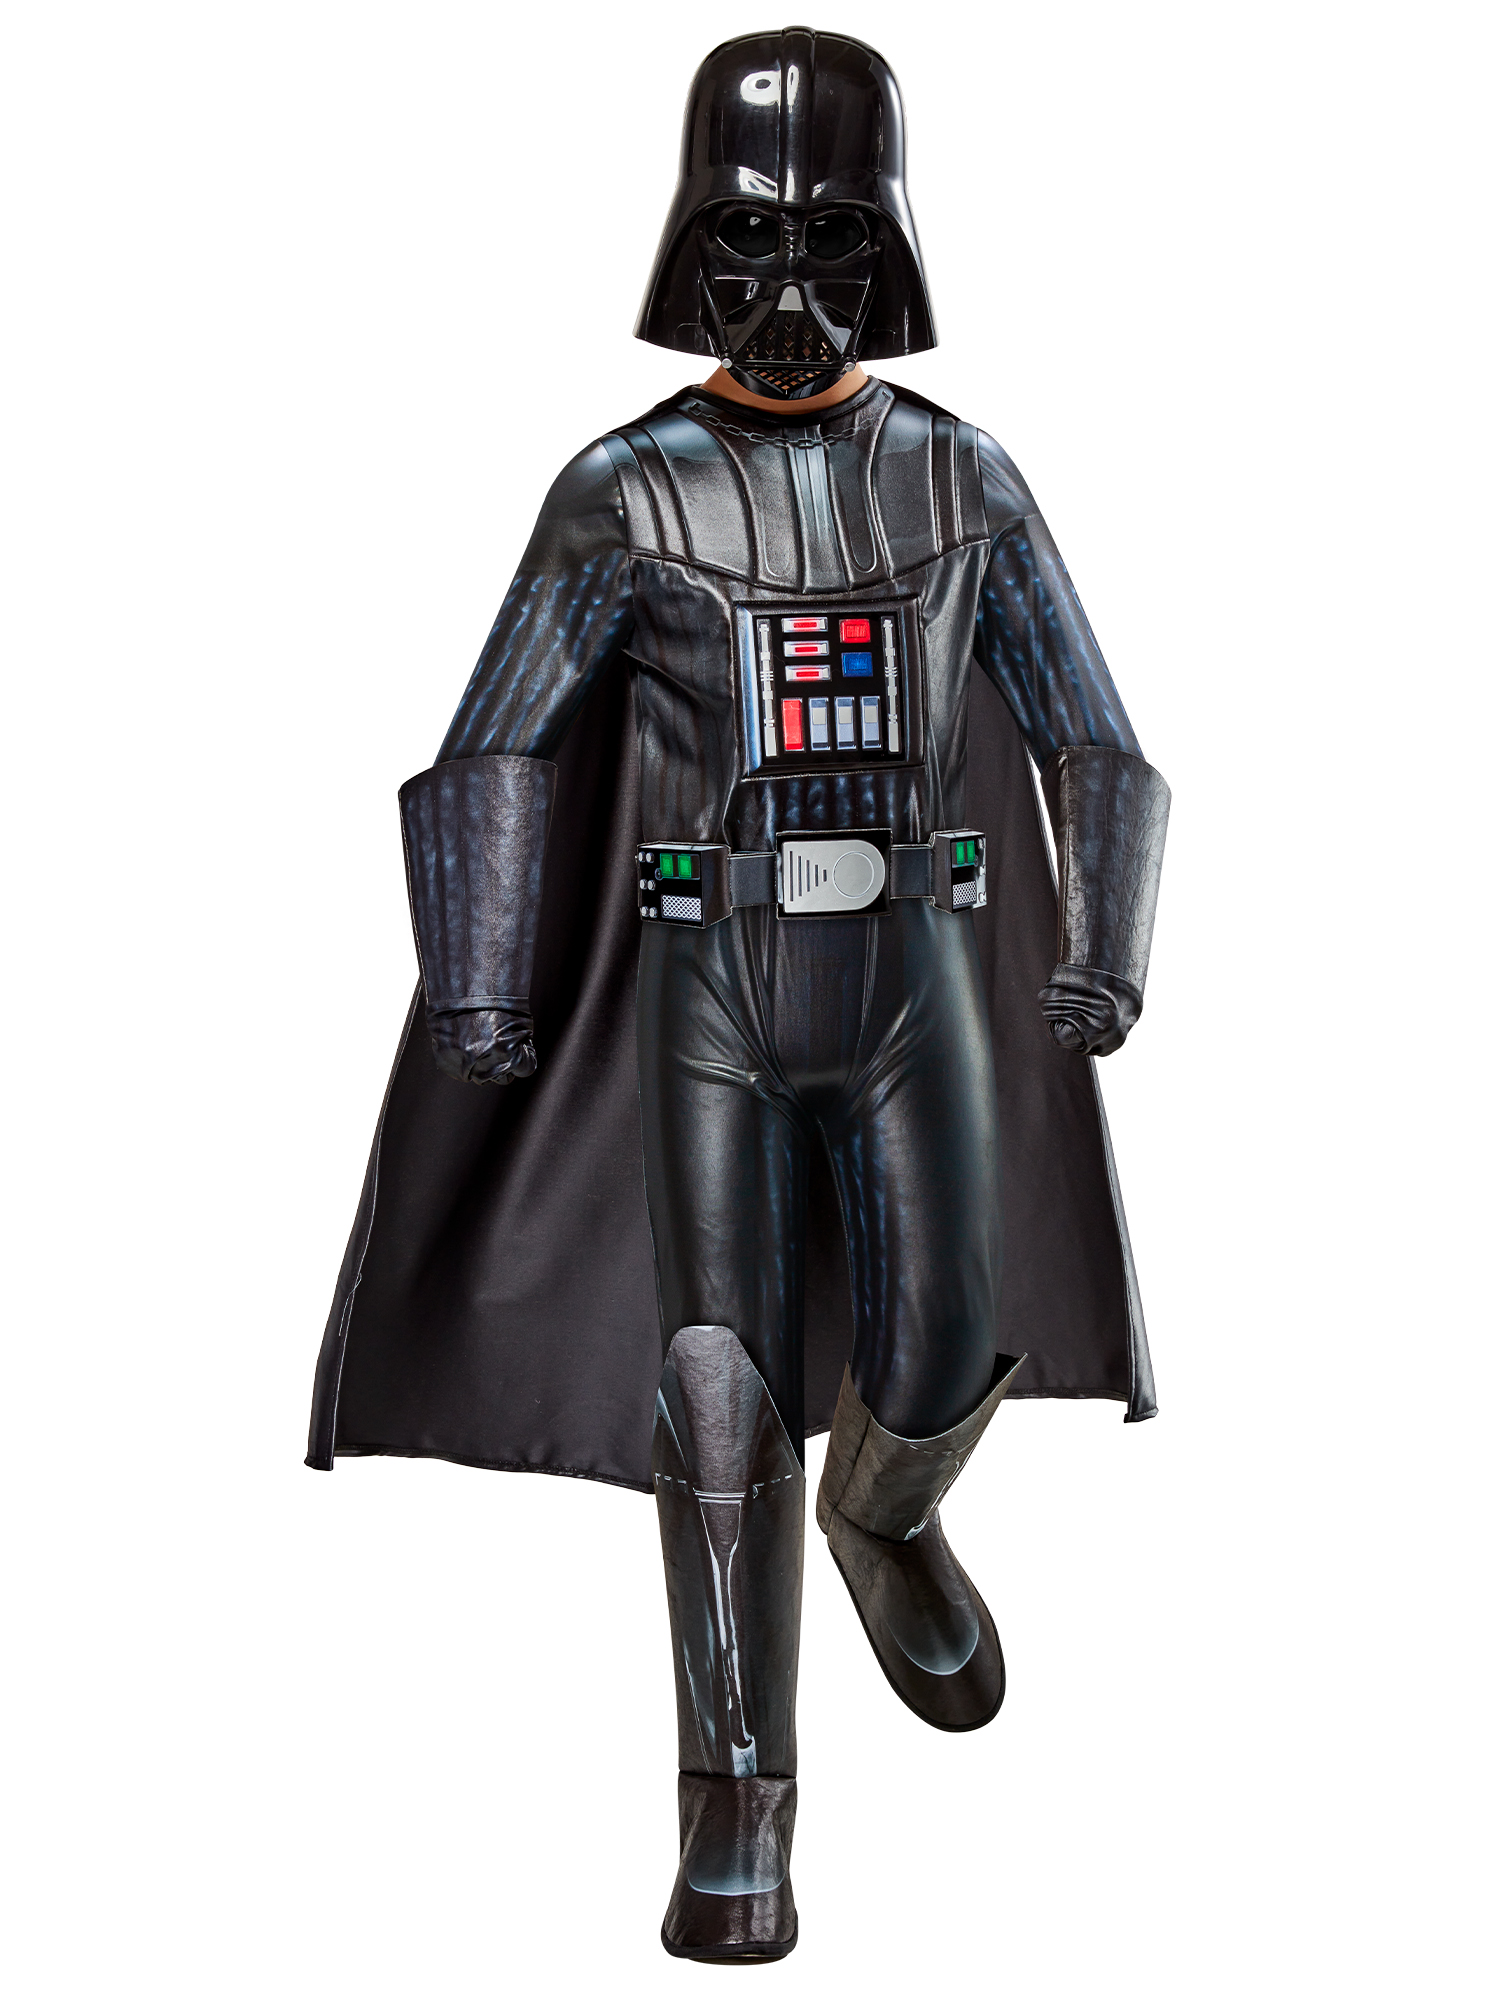 Rubies 1000673 - Premium Darth Vader Kinder Kostüm, Größen ca. 3 - 8 Jahre